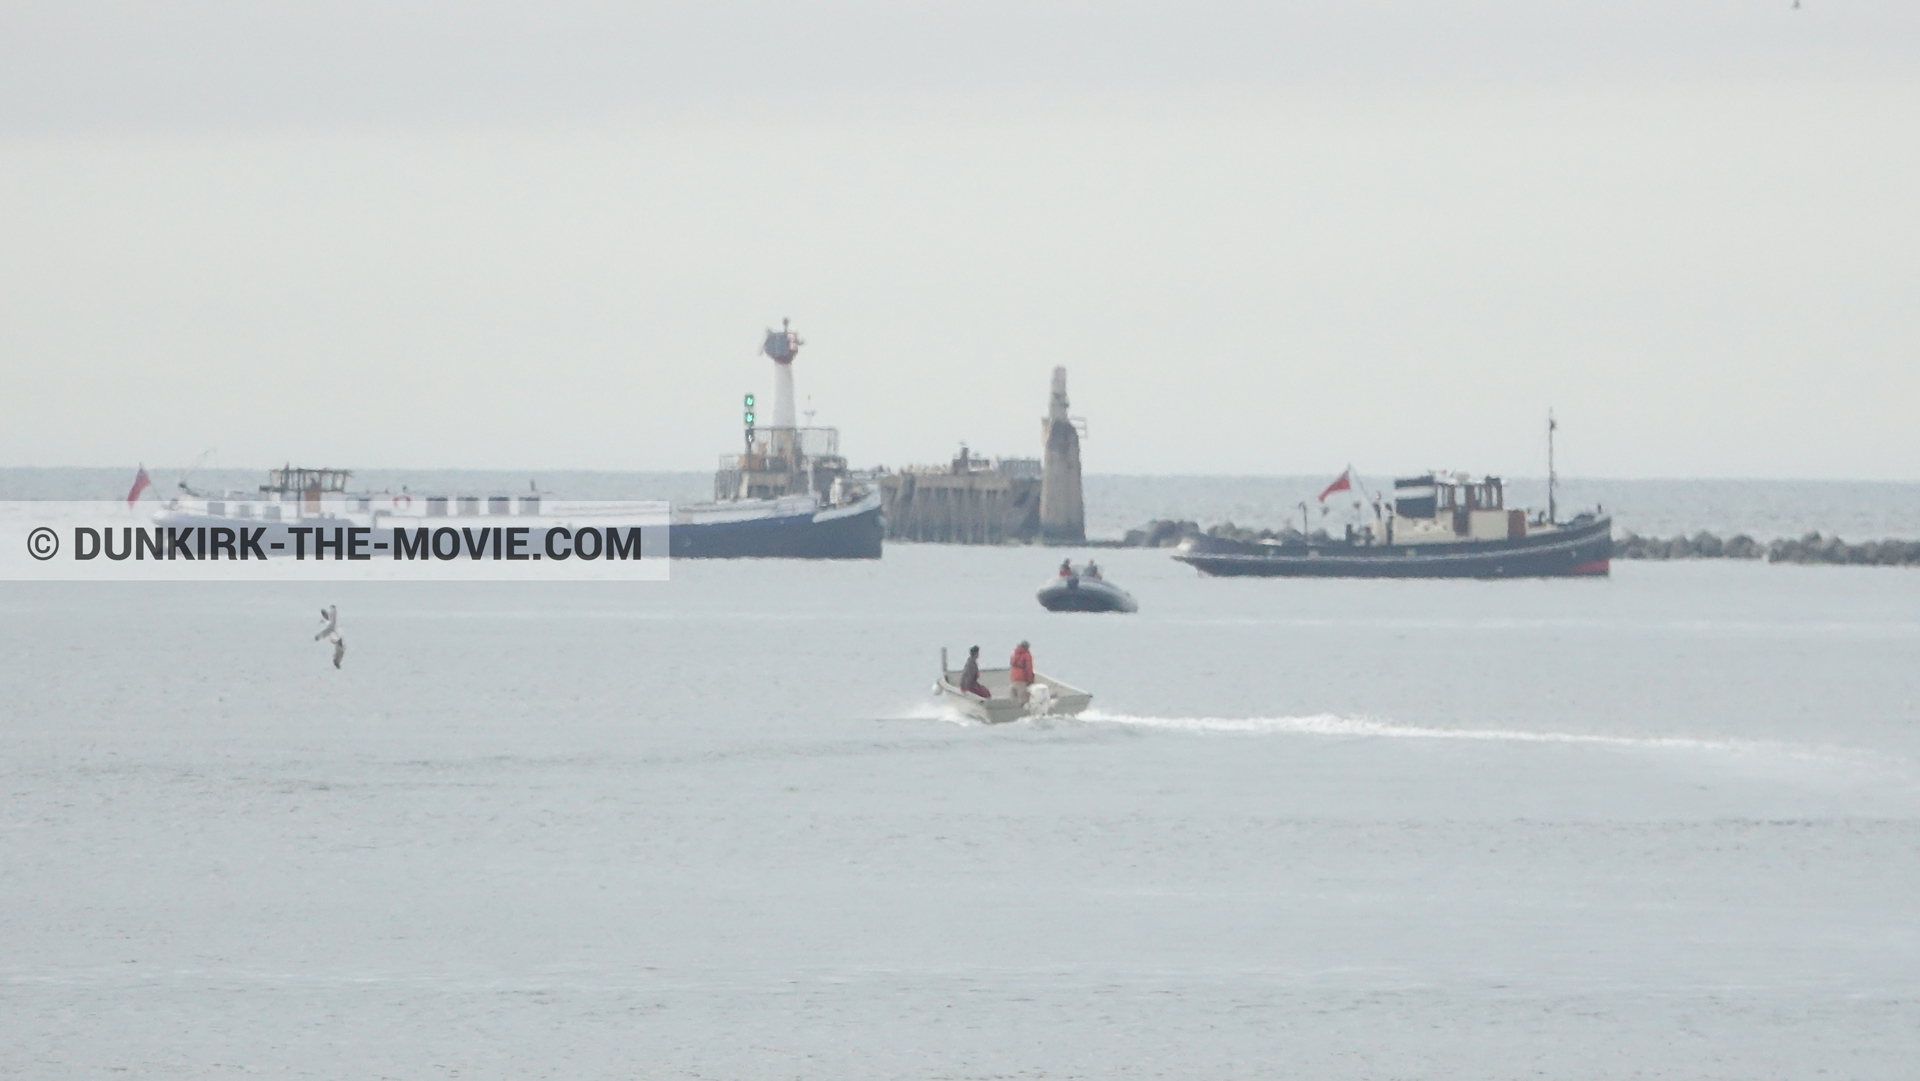 Photo avec bateau, ciel gris, mer calme, zodiac,  des dessous du Film Dunkerque de Nolan